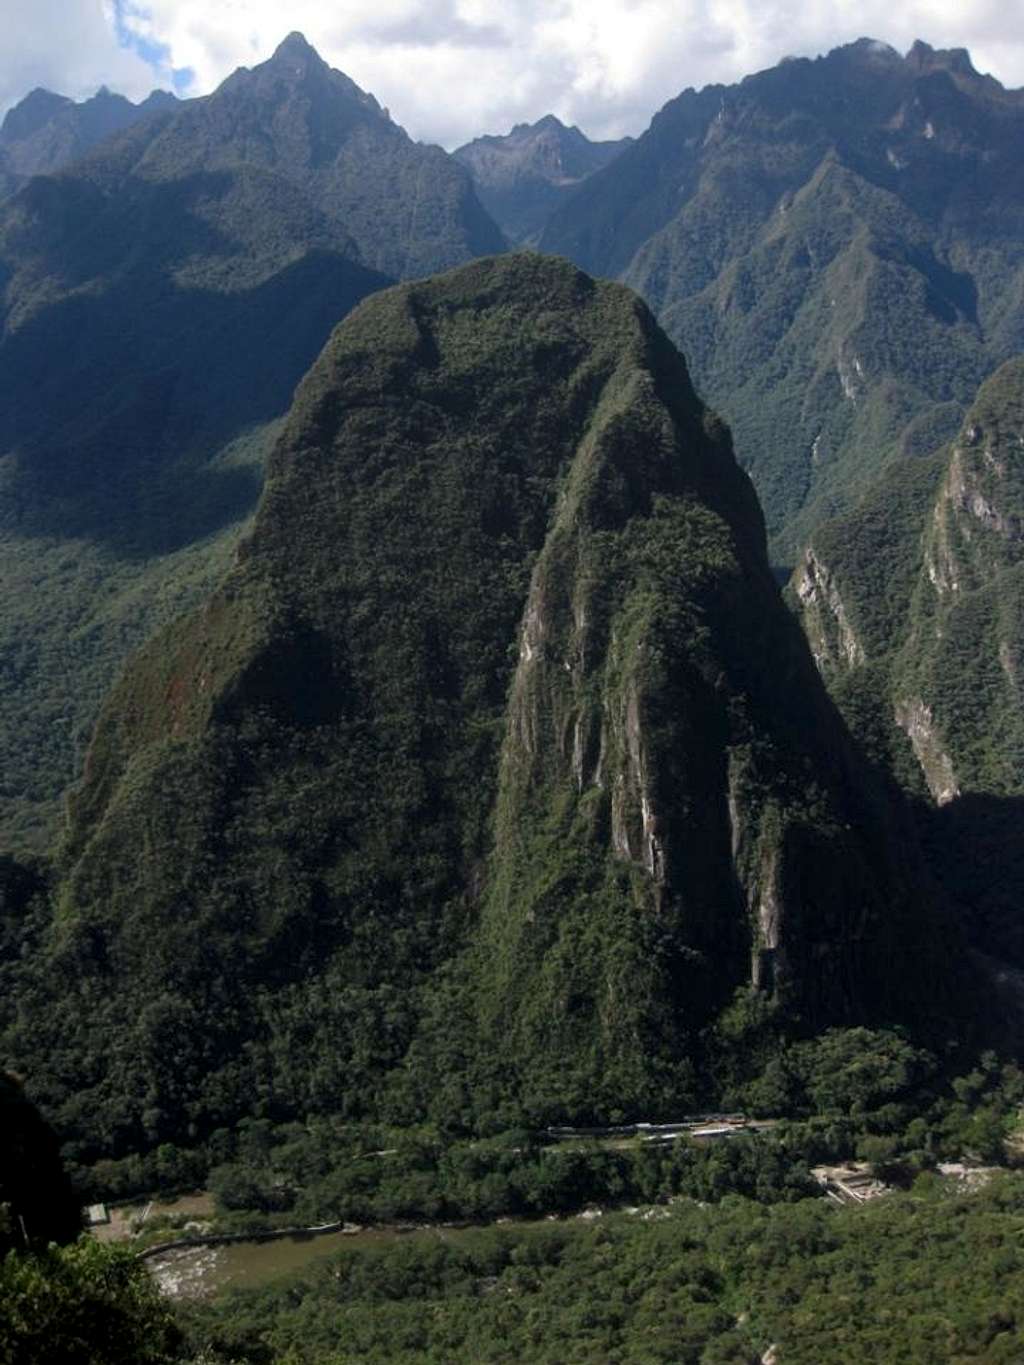 Putucusi from Machu Picchu